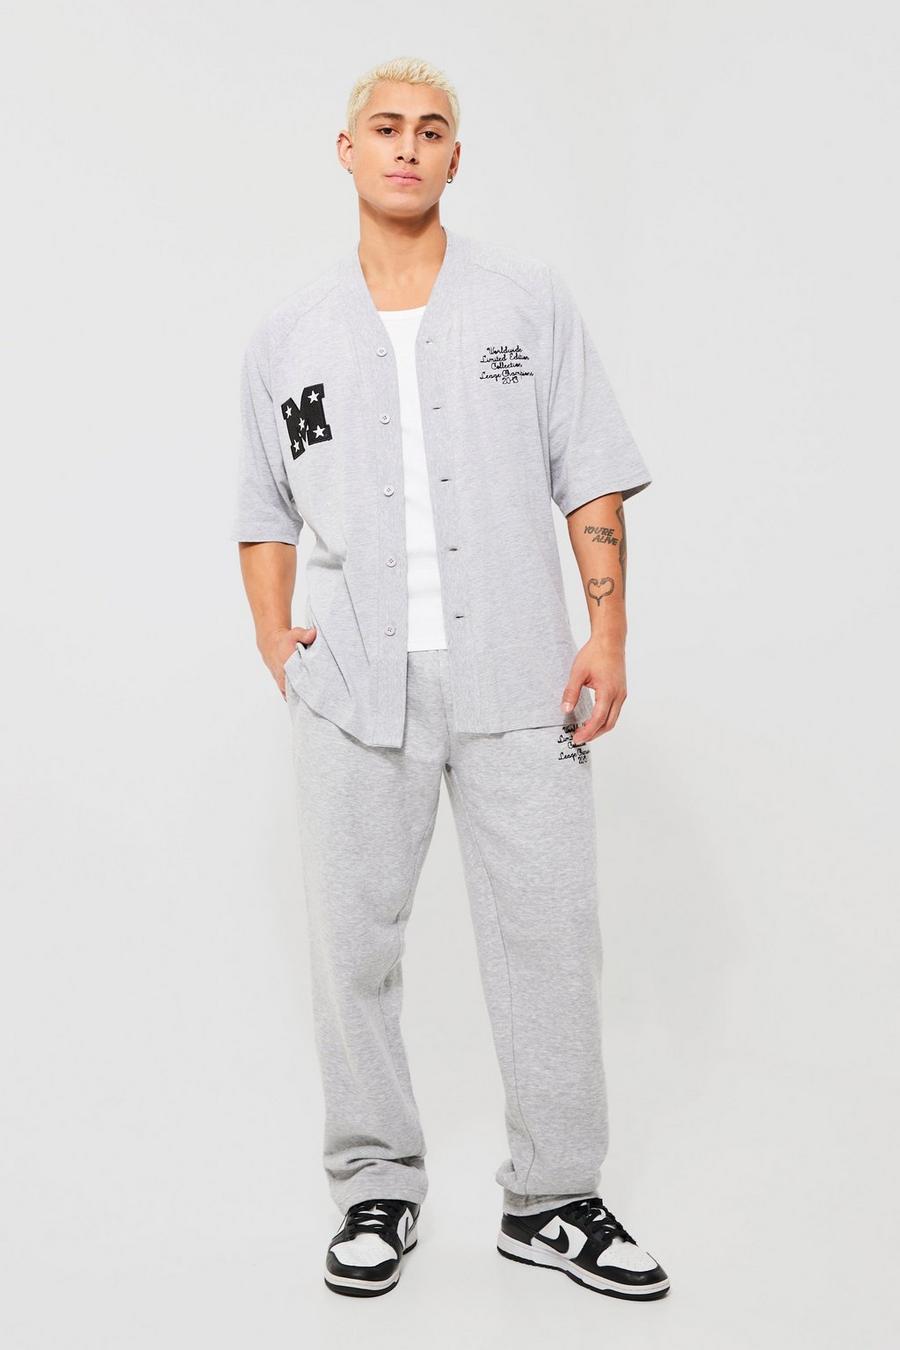 Grey marl grå T-shirt och mjukisbyxor med baseballmotiv